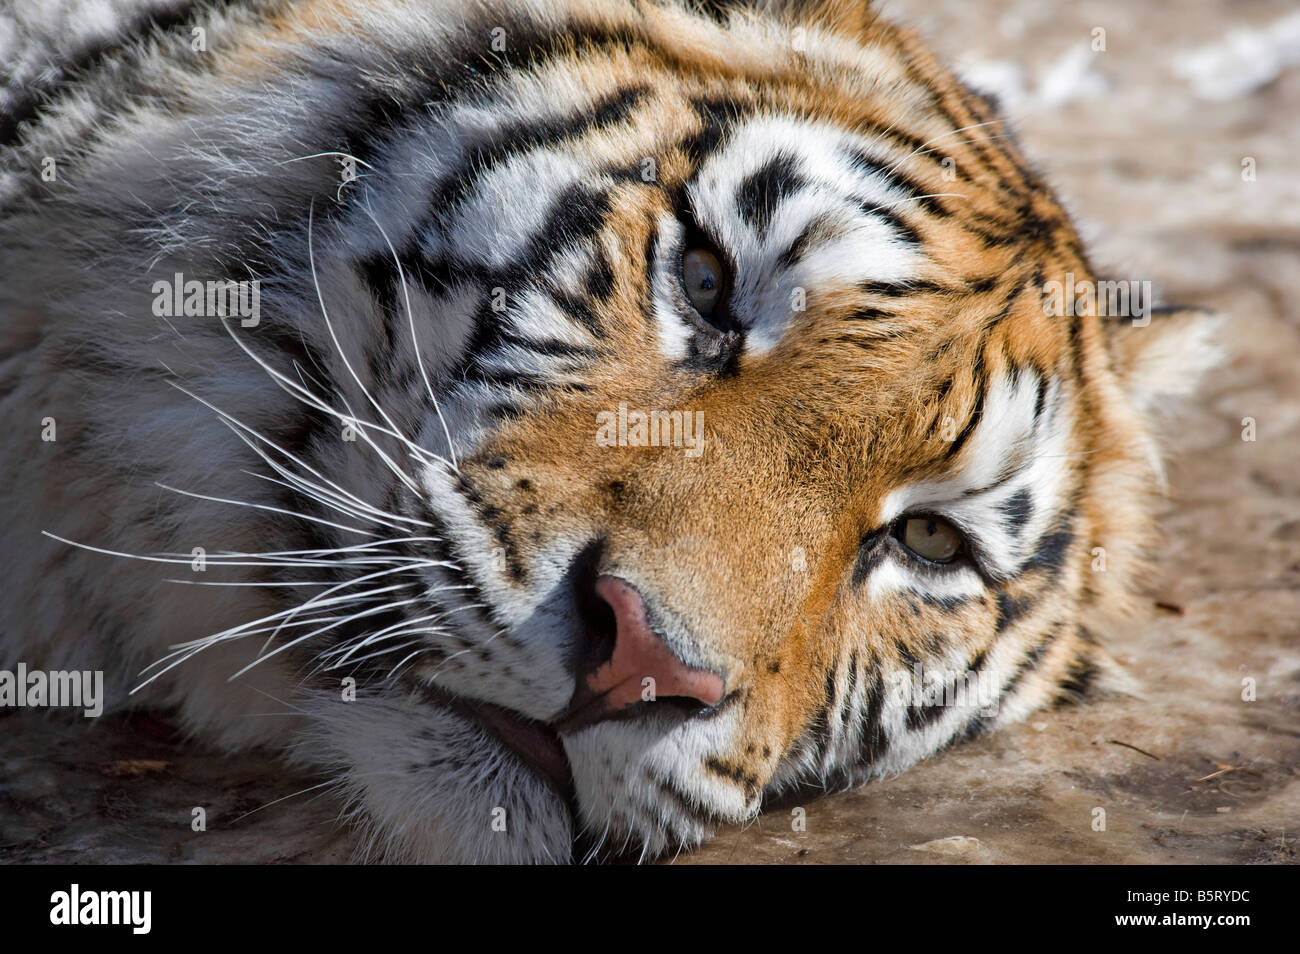 Siberian or amur tiger Panthera tigris altaica portrait China Stock Photo